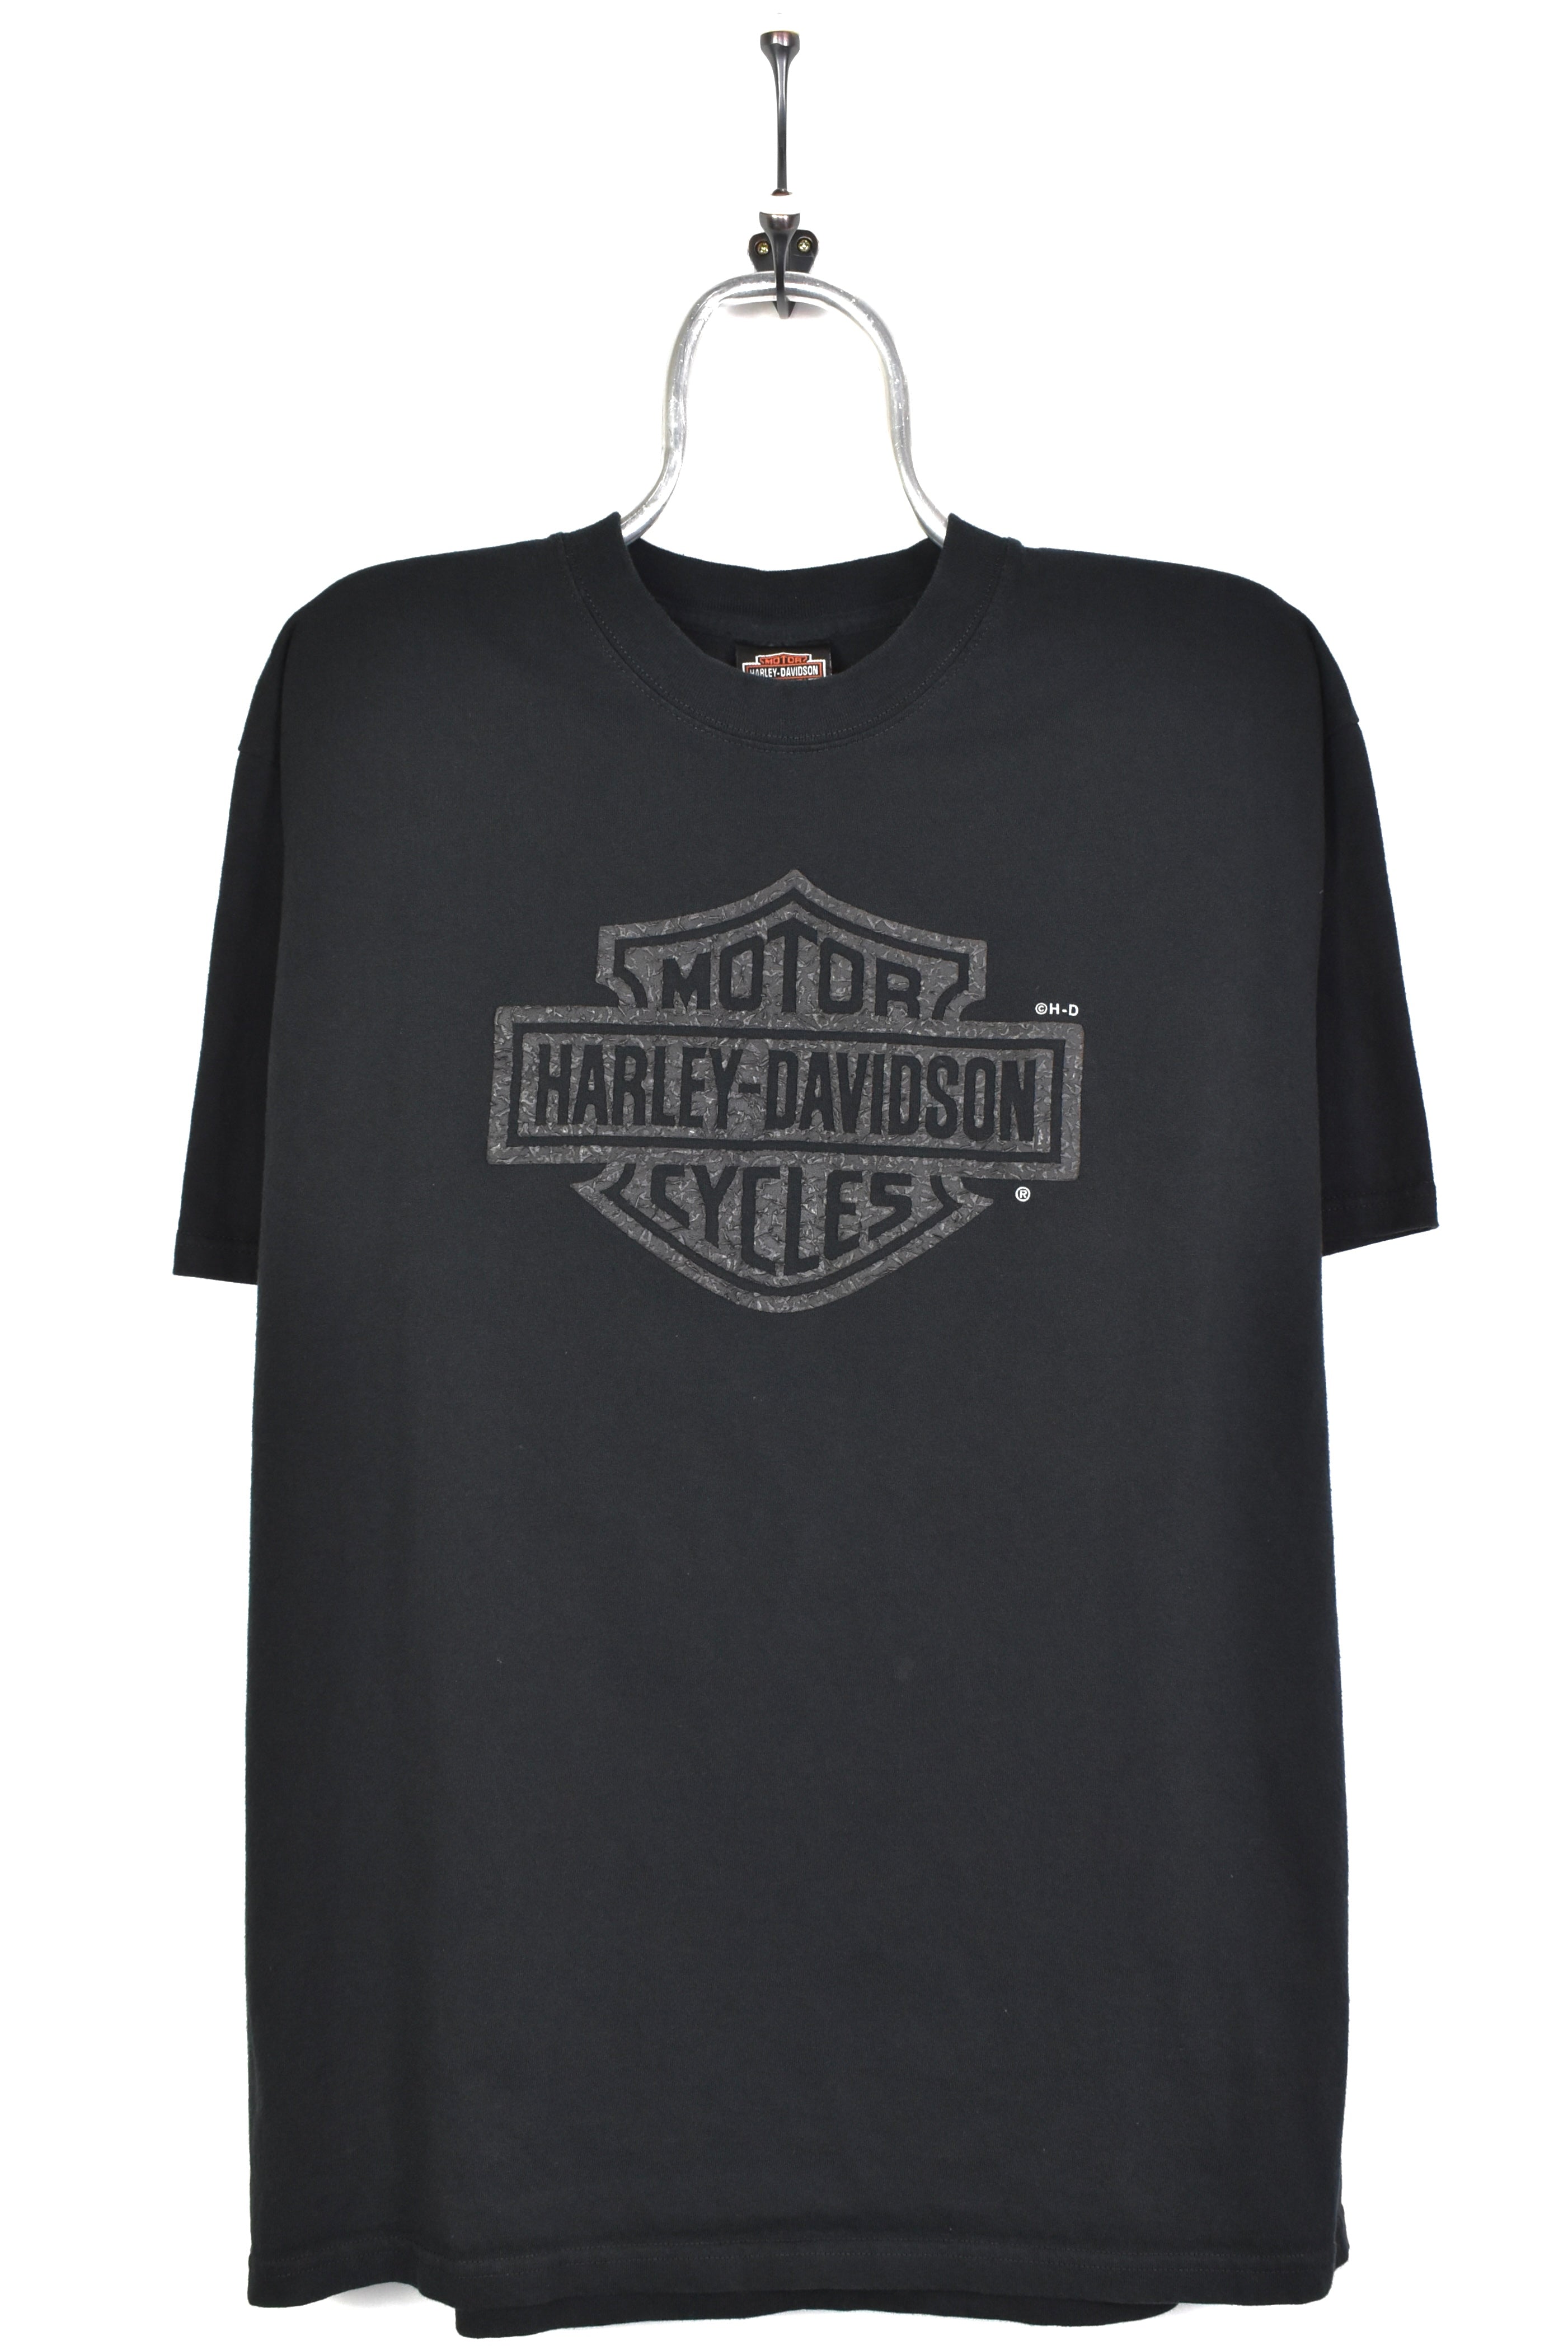 Modern Harley Davidson shirt, Mexico motorcycle biker tee - large, black HARLEY DAVIDSON